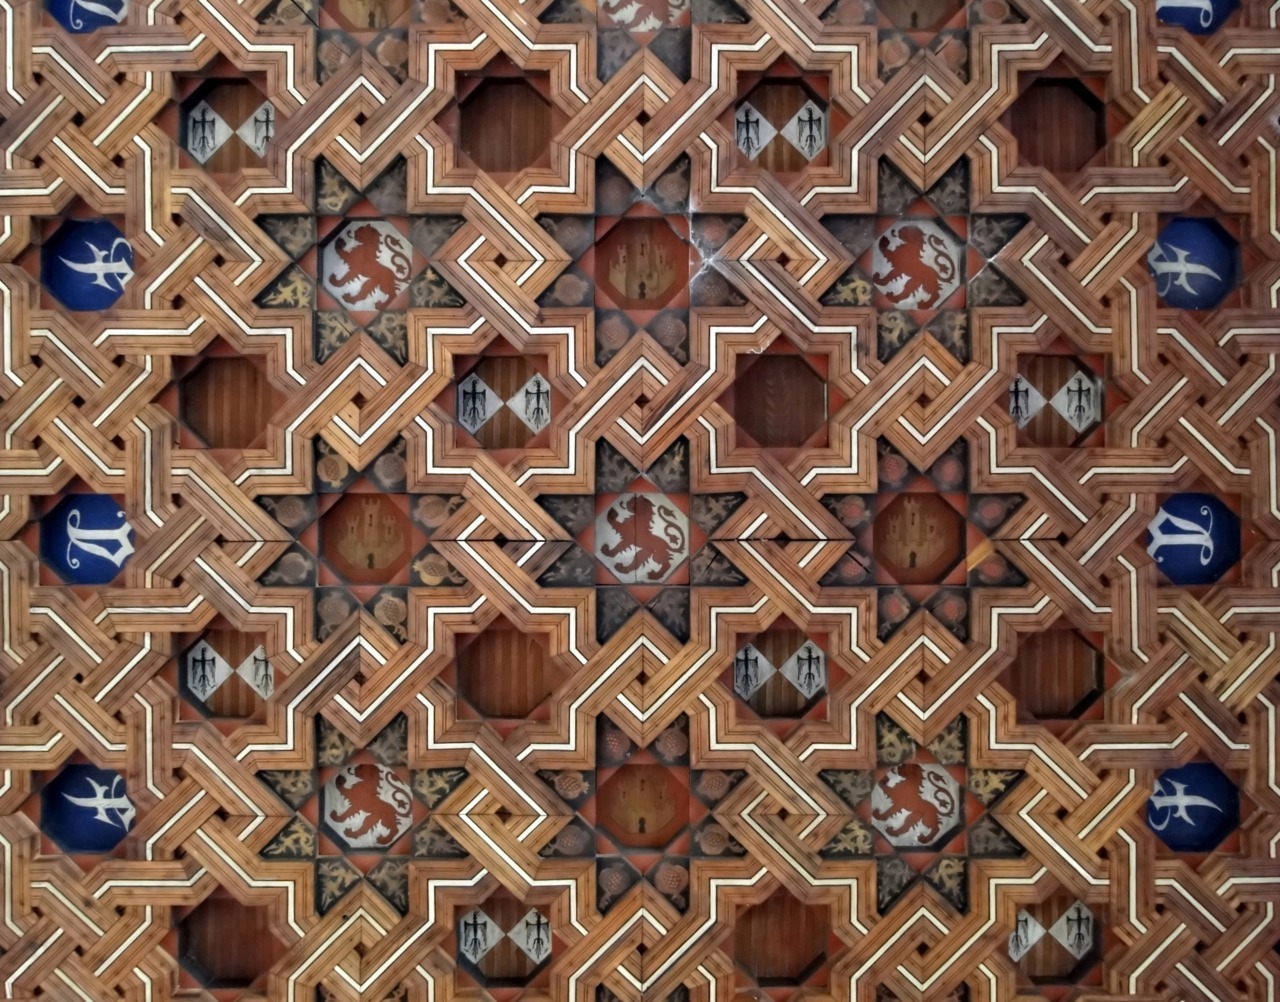 Mudéjar wooden ceiling in the cloister of the Monastery of San Juan de los Reyes, Toledo, Spain